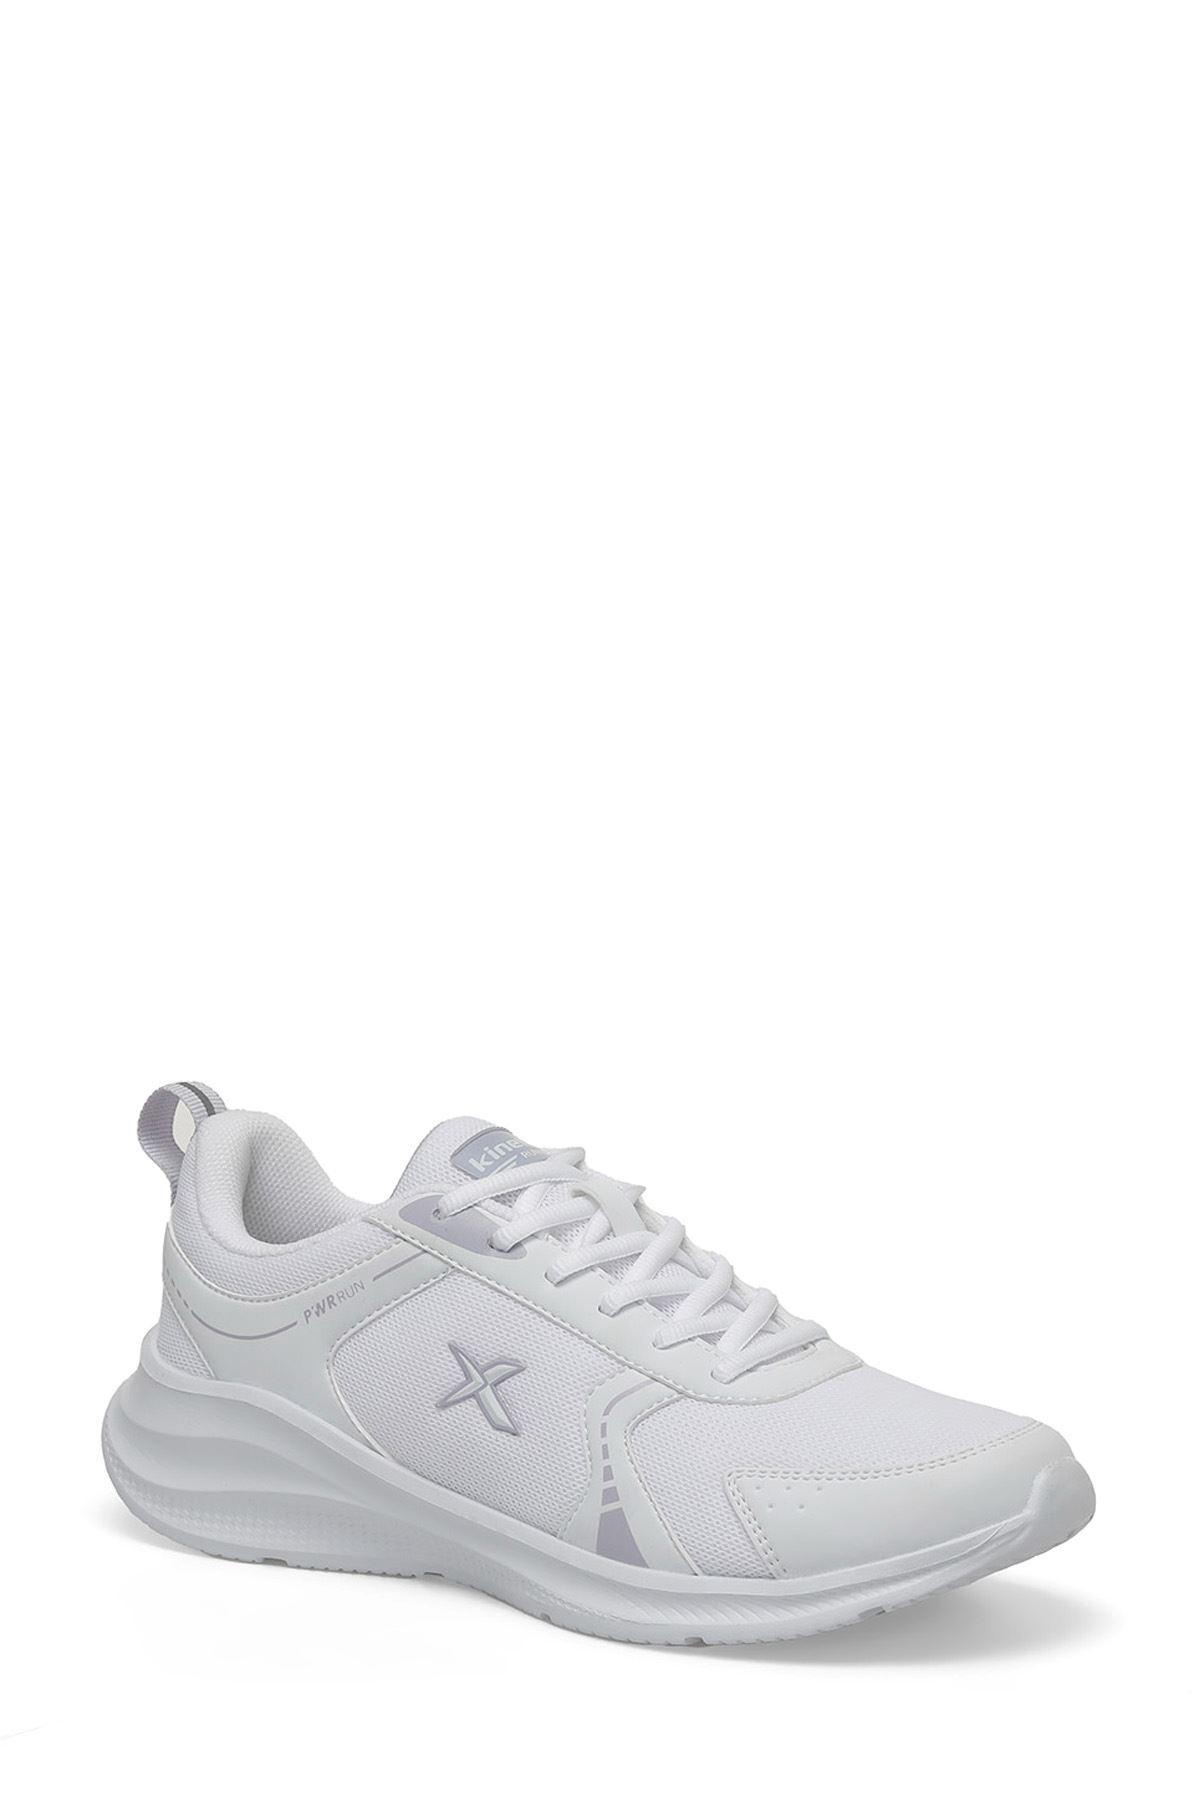 Charles Tx W 4Fx Kinetıx Kadın Beyaz Spor Ayakkabı - 101490410